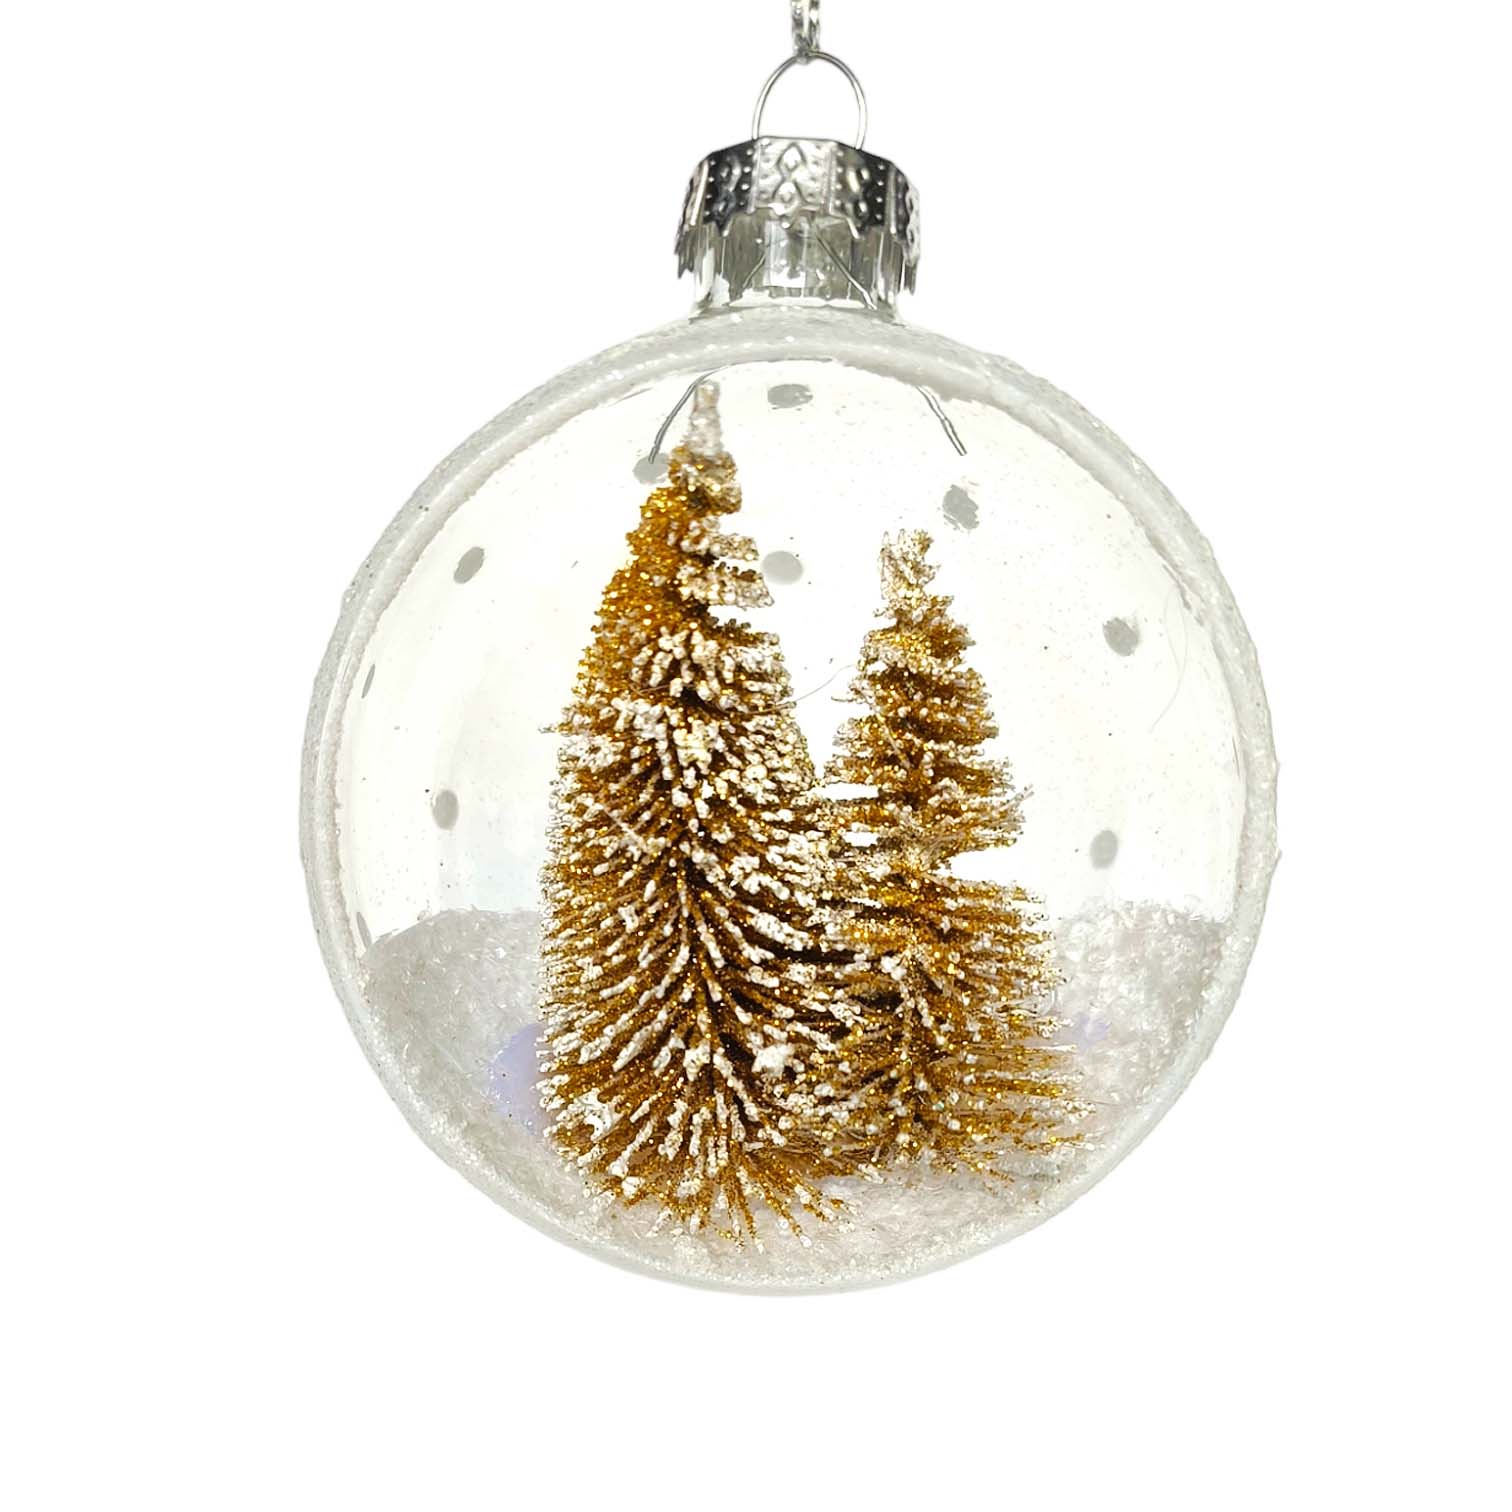 Thiết kế gold decorations christmas tree cho cây thông Noel lộng lẫy và sang trọng